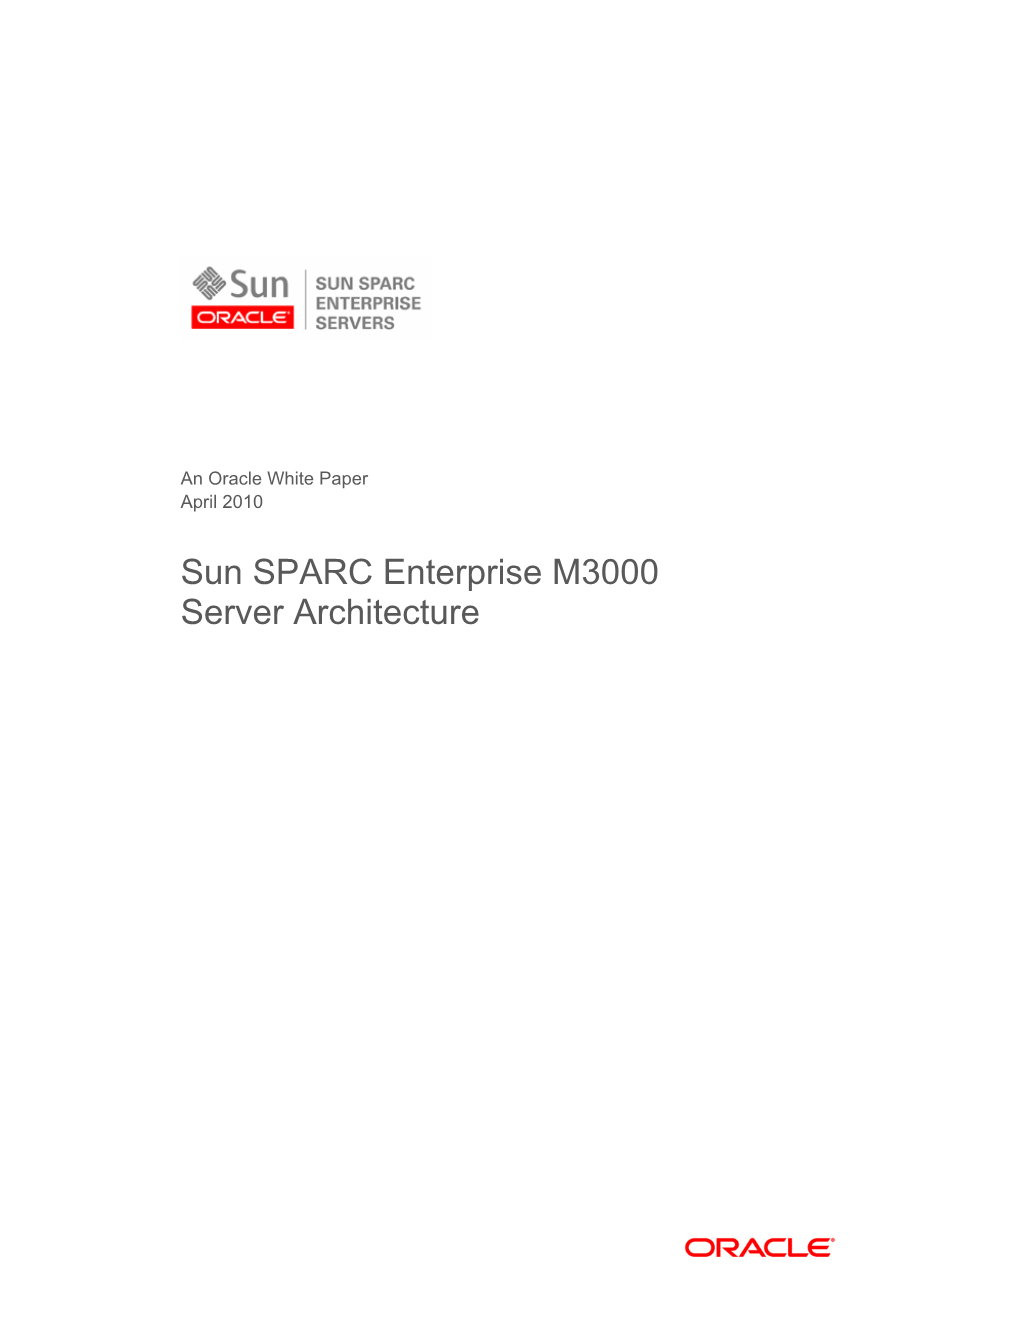 Sun SPARC Enterprise M3000server Architecture